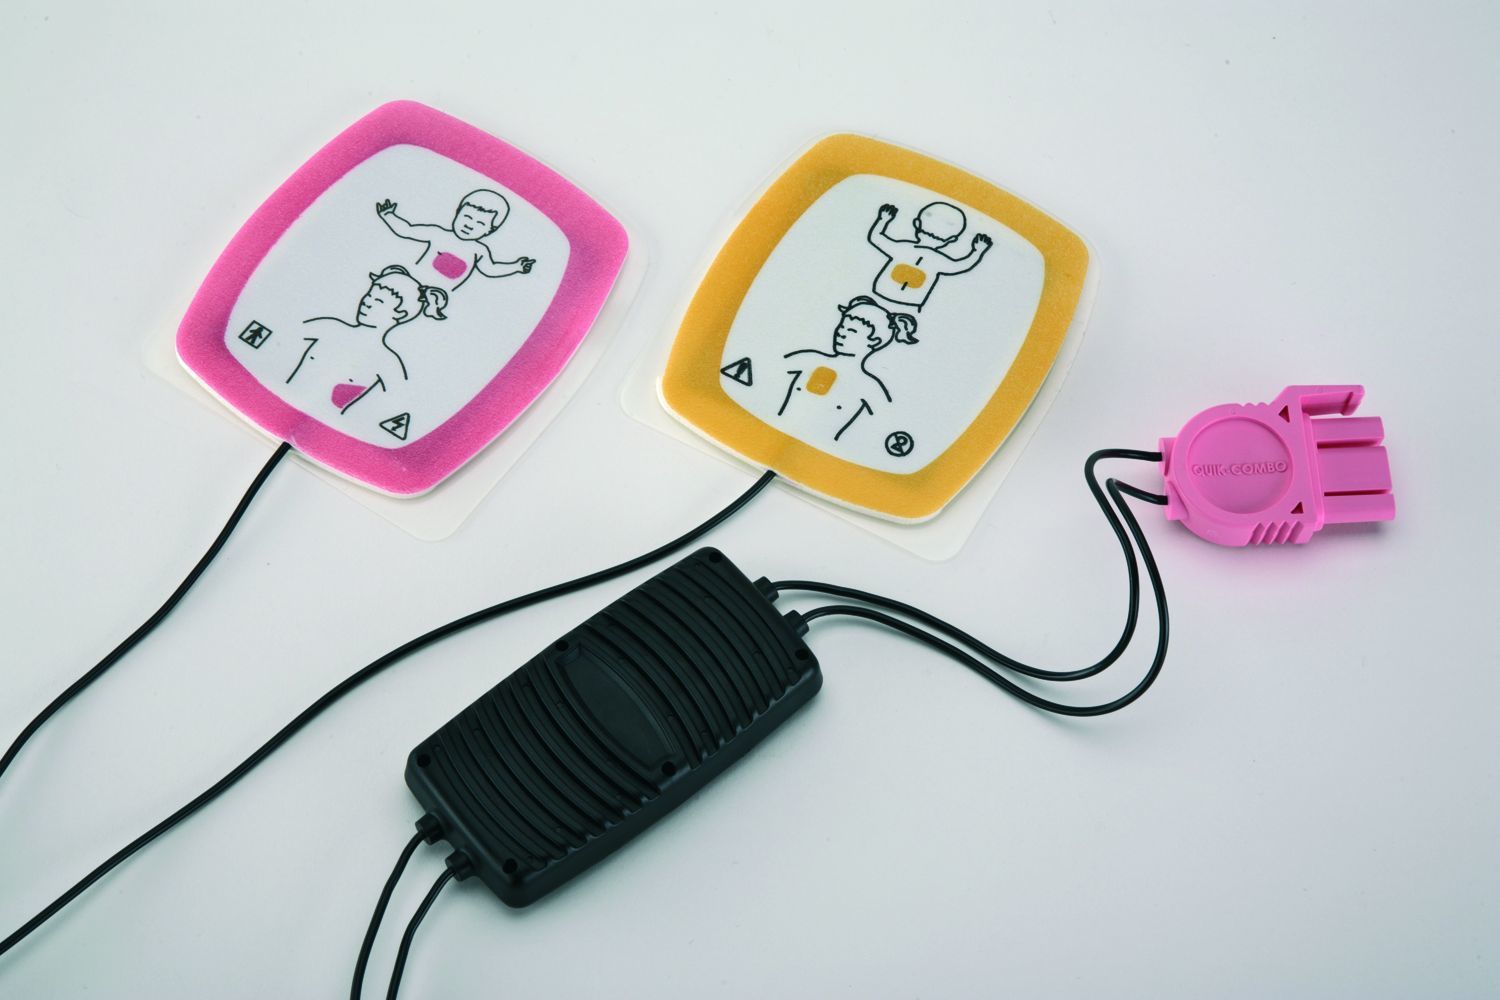 QUIK-PAK Elektroden für KINDER, 1 Paar Elektroden für Kinder < 8 Jahre / < 25 kg Körpergewicht für Defibrillator LIFEPAK 1000 Art. 819200, Gewicht ca. 0,30 kg